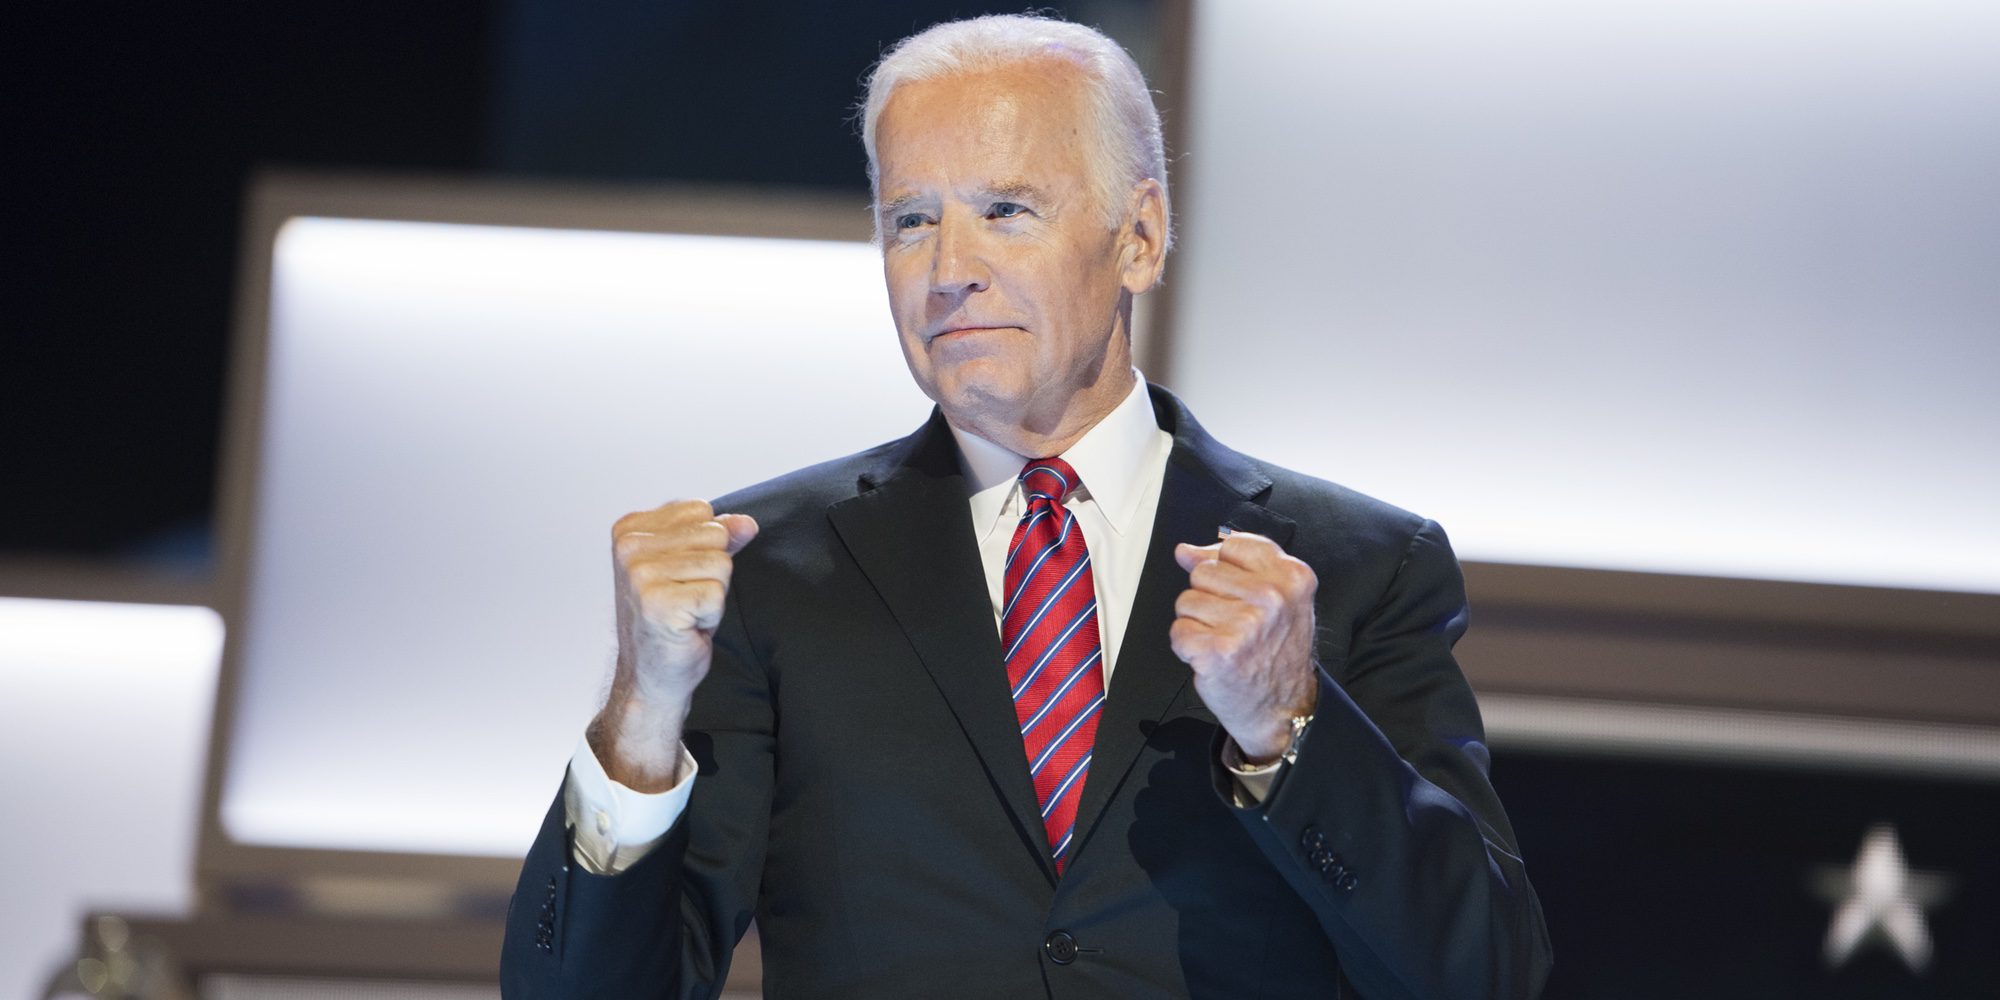 El vicepresidente estadounidense Joe Biden aparecerá en un capítulo de 'Ley y Orden'